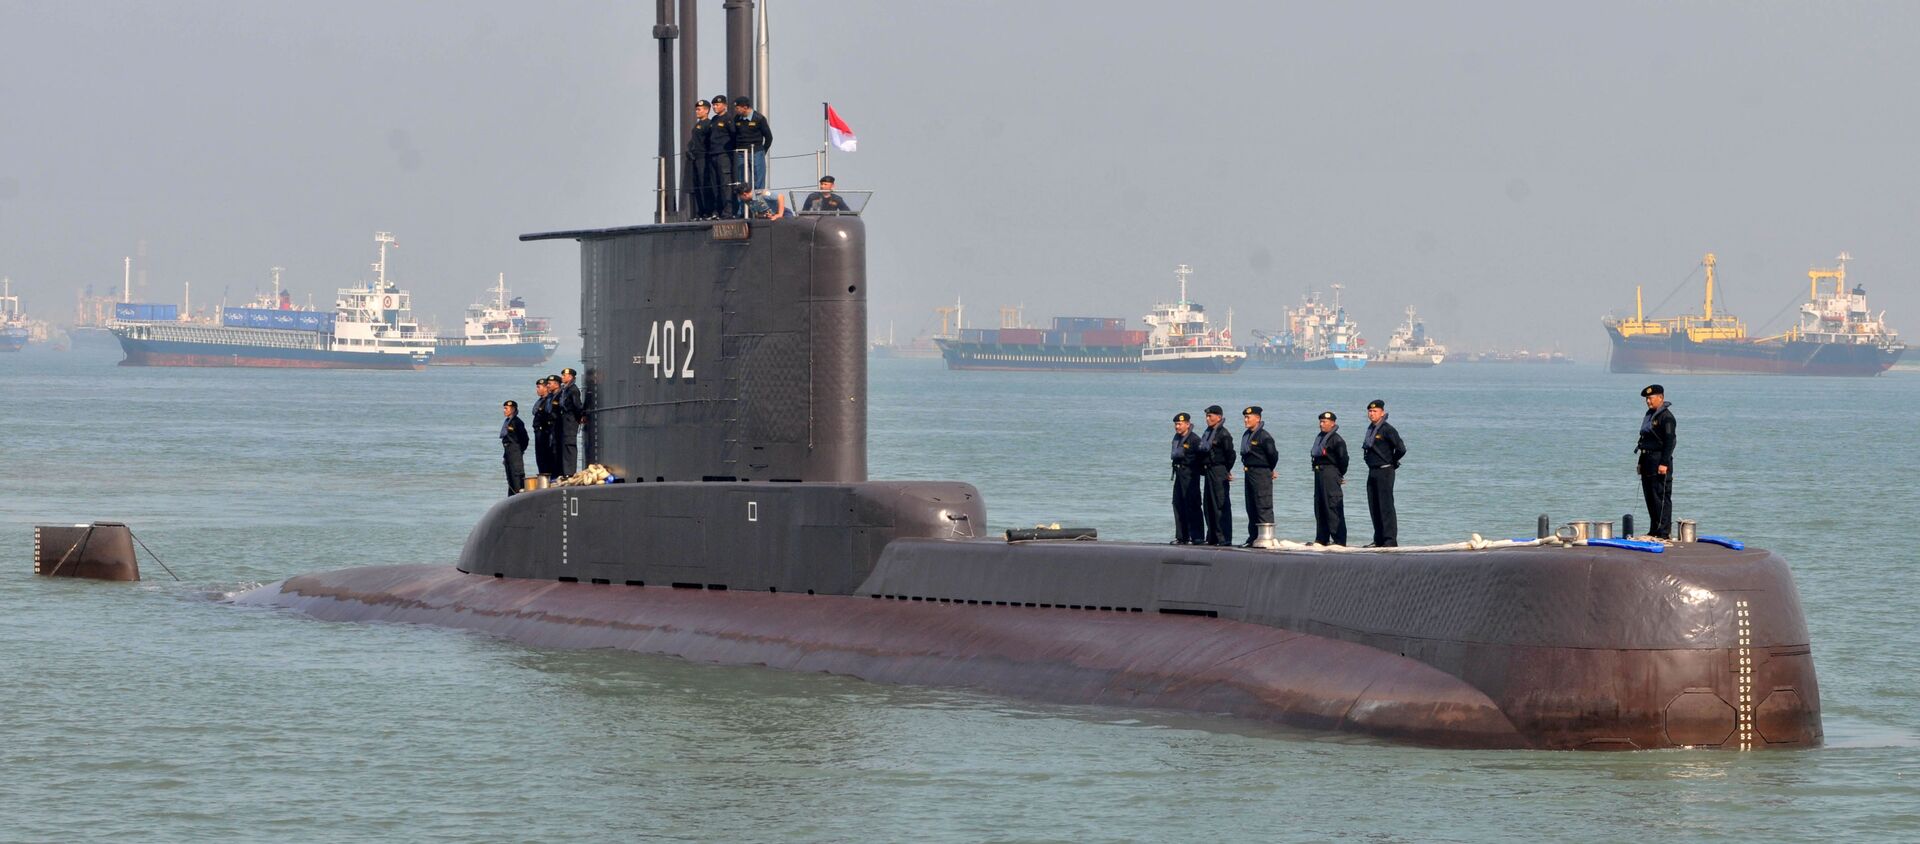 Tàu ngầm KRI Nanggala 402 của Indonesia. - Sputnik Việt Nam, 1920, 22.04.2021